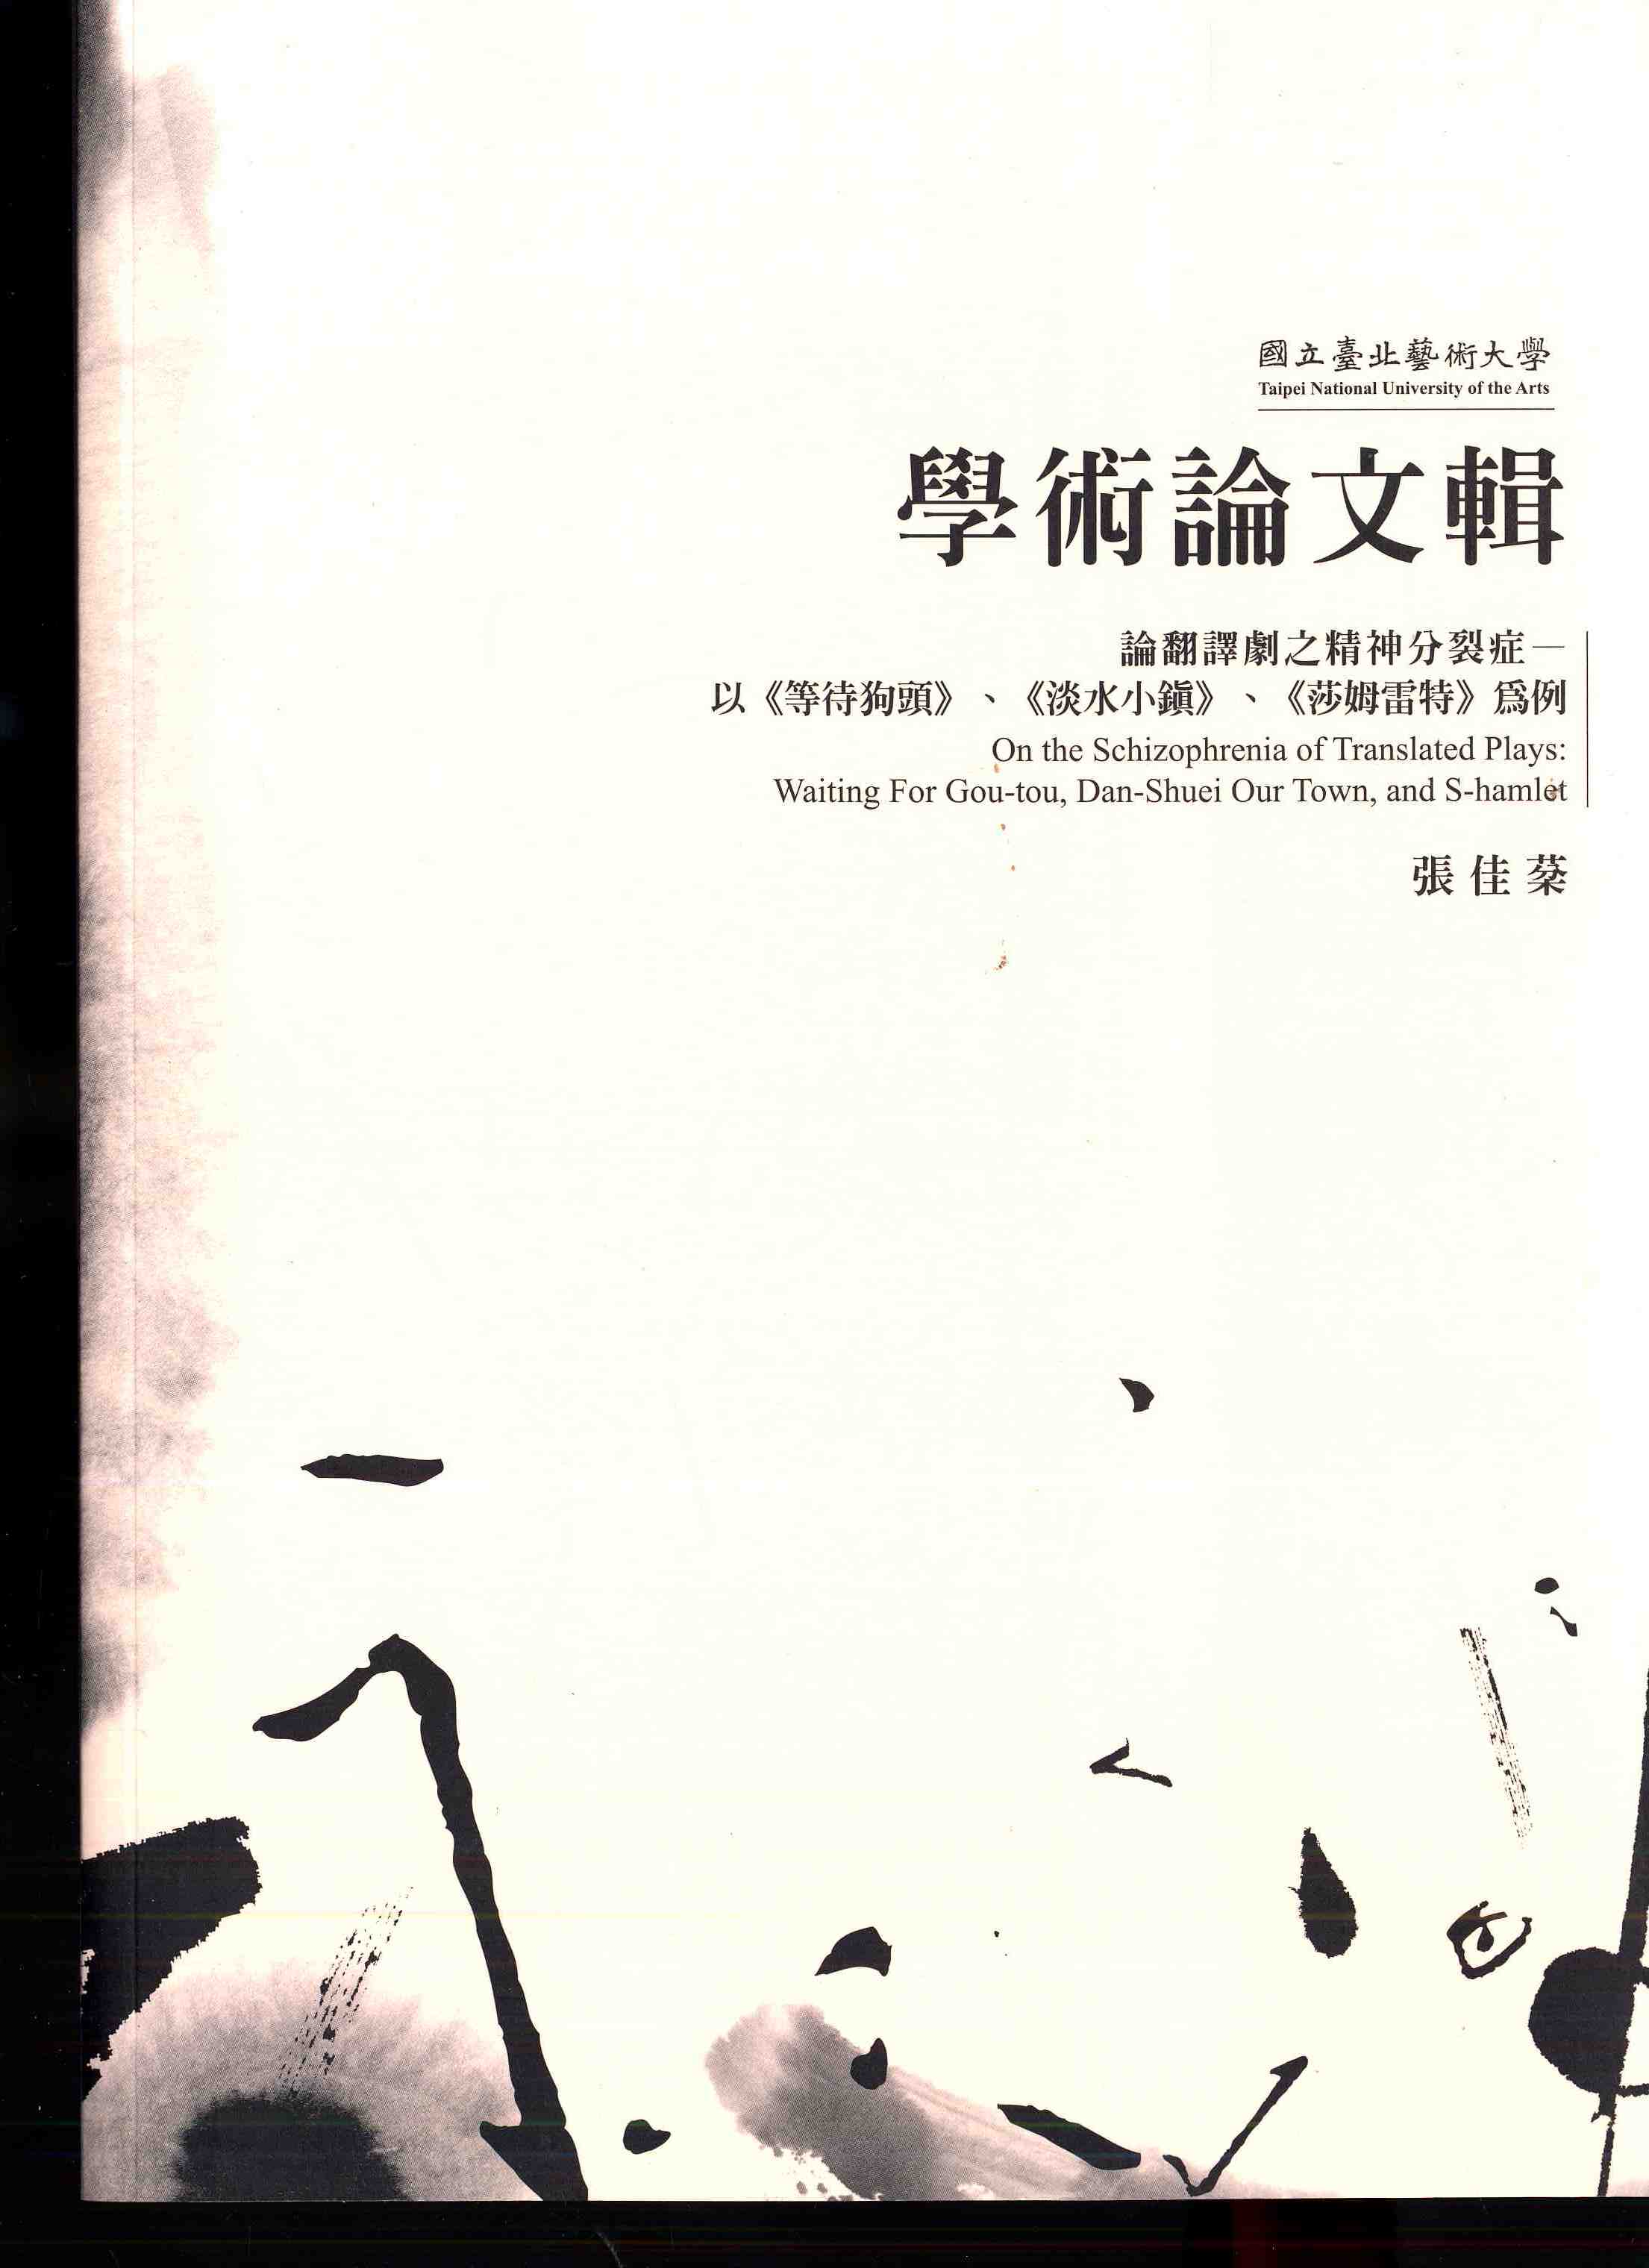 國立臺北藝術大學學術論文輯 - 論翻譯劇之精神分裂症 - 以《等待狗頭》、《淡水小鎮》、《莎姆雷特》為例